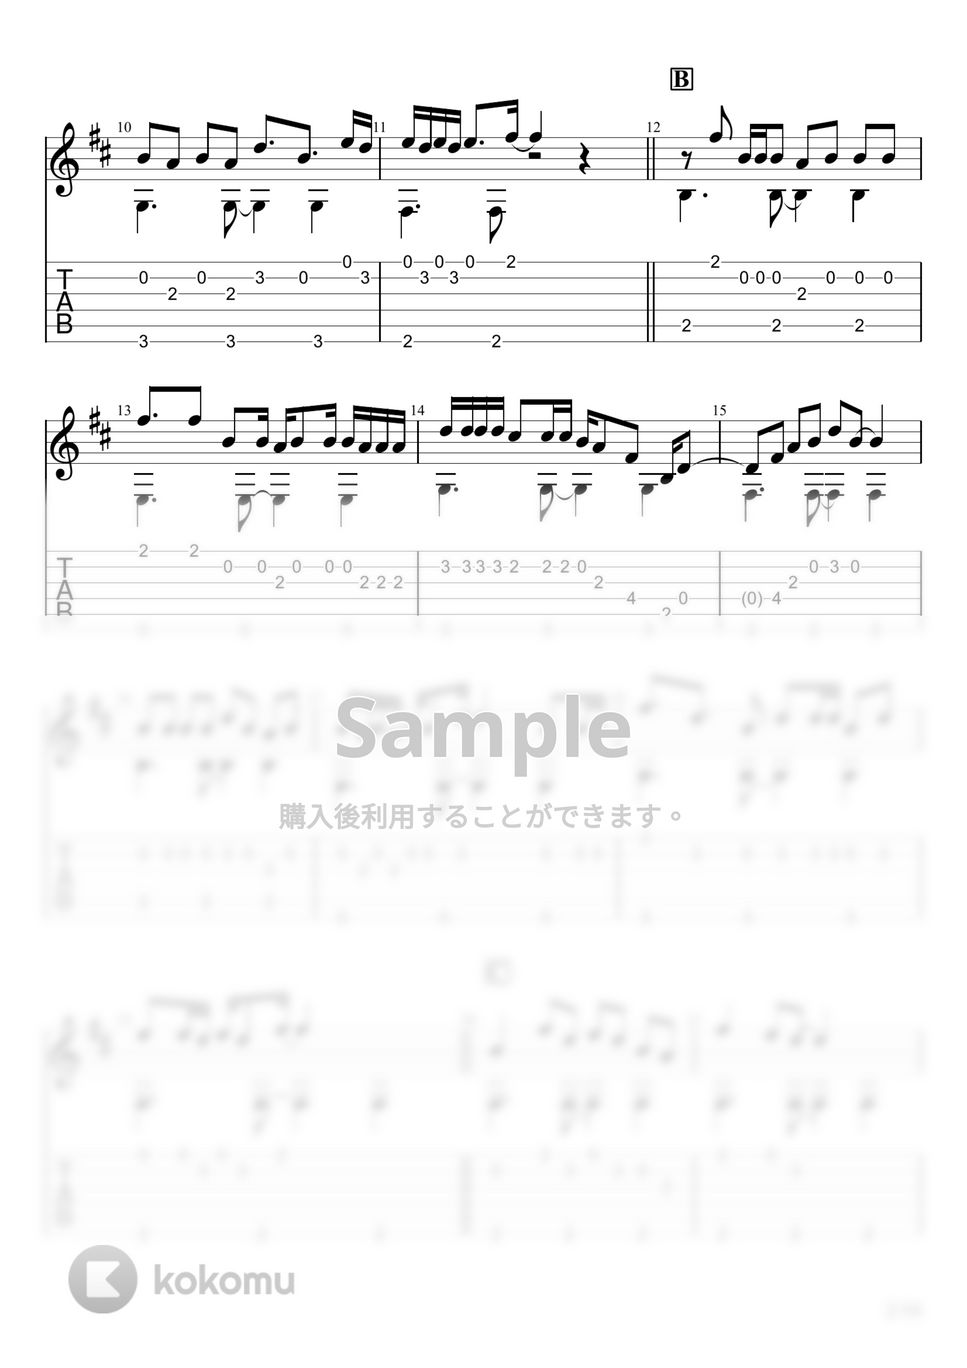 なみぐる - ずんだパーリナイ (ソロギター) by u3danchou